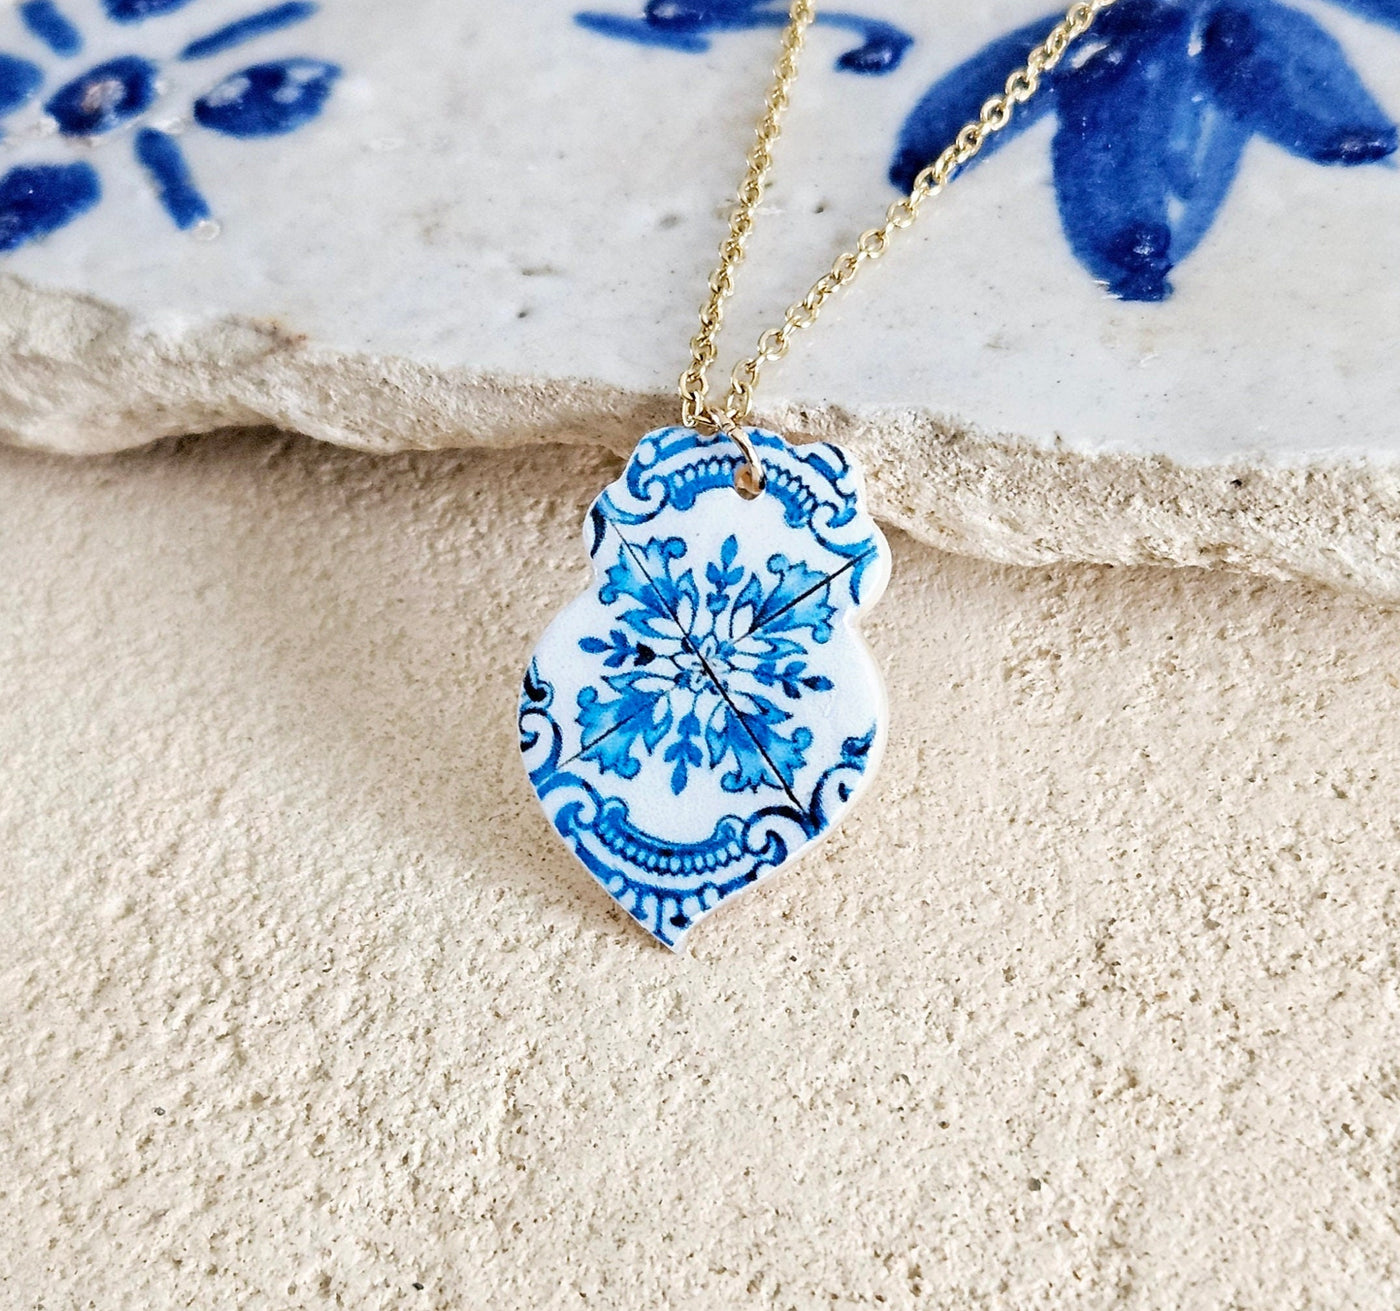 Minho Tile Heart Necklace Portuguese Blue White Tile Azulejo Gold Steel Pendant Portugal Gift Handmade Souvenir Travel Mom Gift for Woman